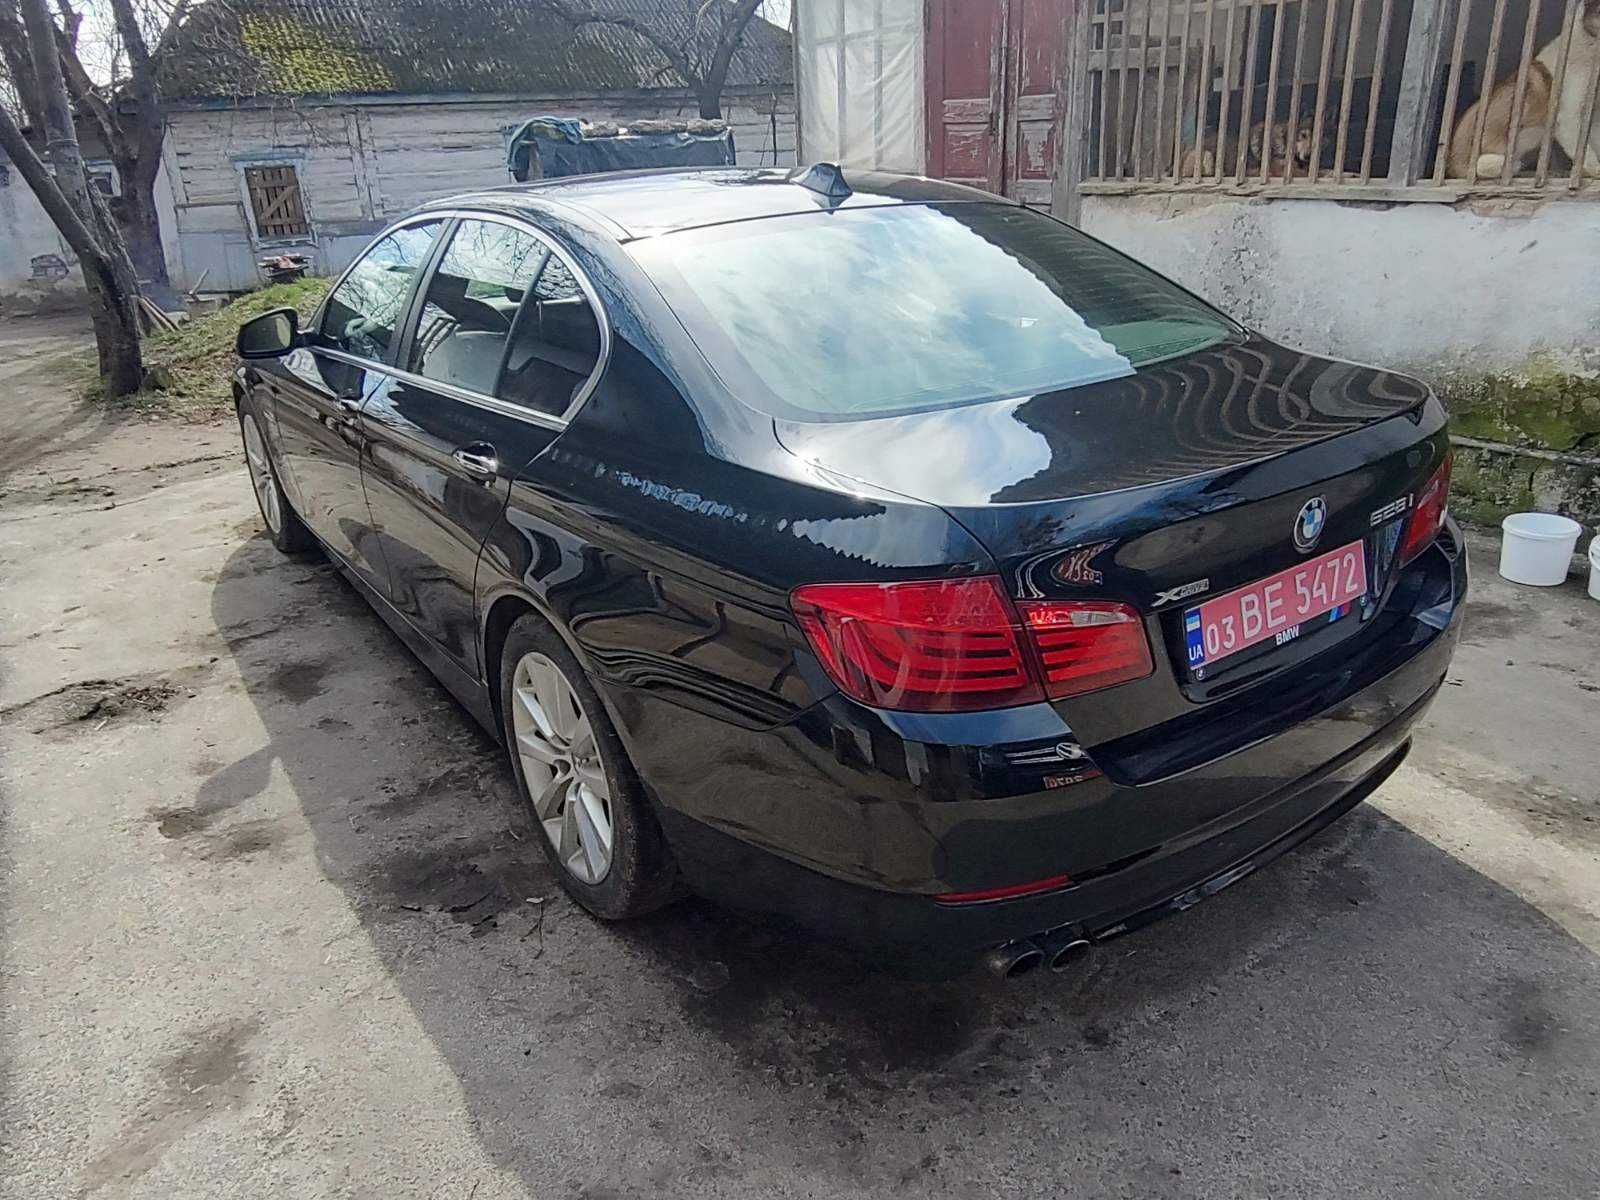 BMW 528i, год 2012, 144000км, не крашена, нафарширована. Чорный.